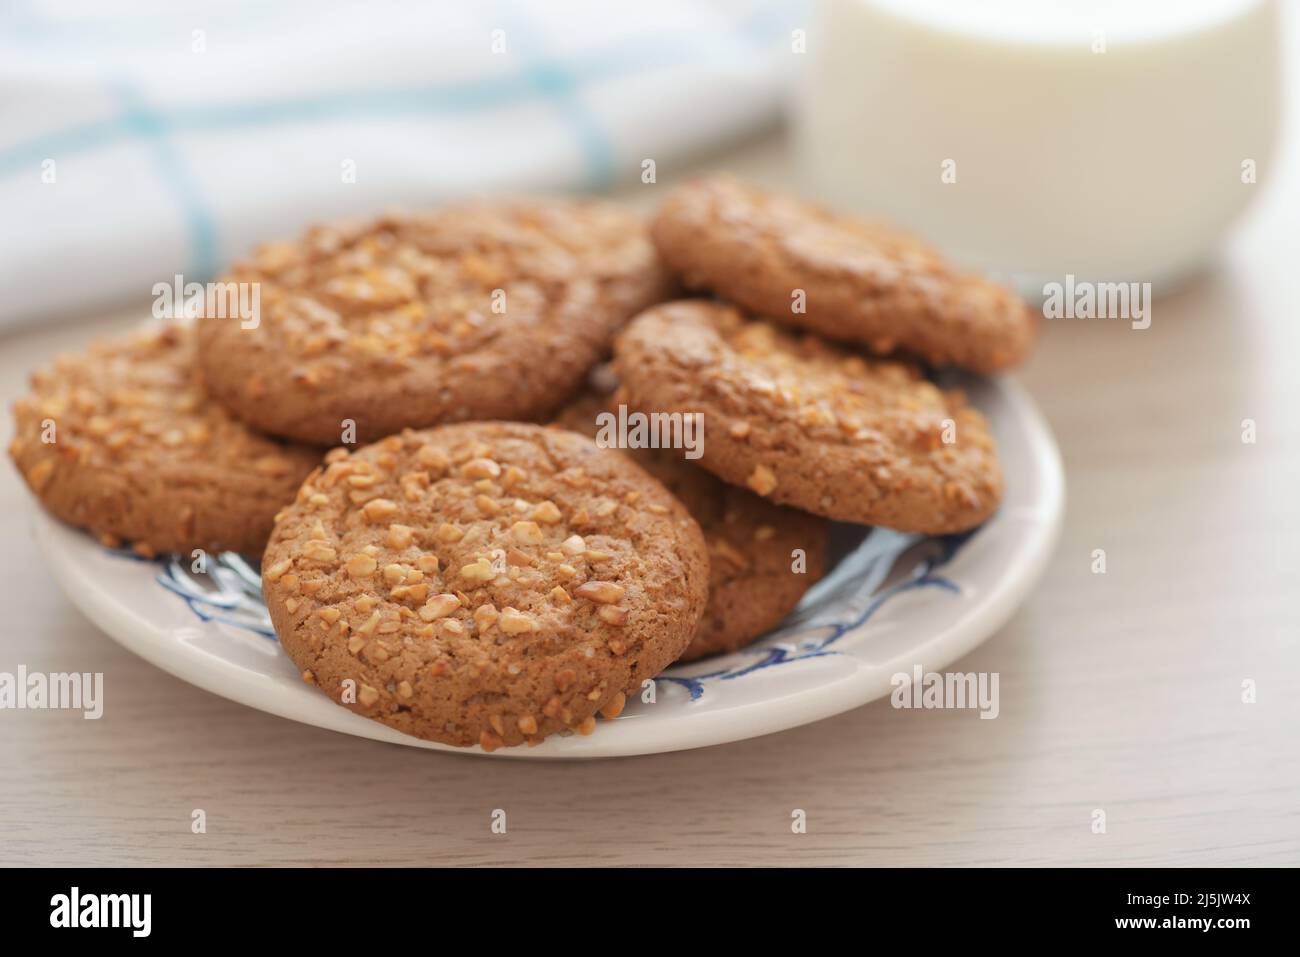 Gros plan des biscuits aux flocons d'avoine avec chapelure d'arachide et verre de lait sur une table en bois Banque D'Images